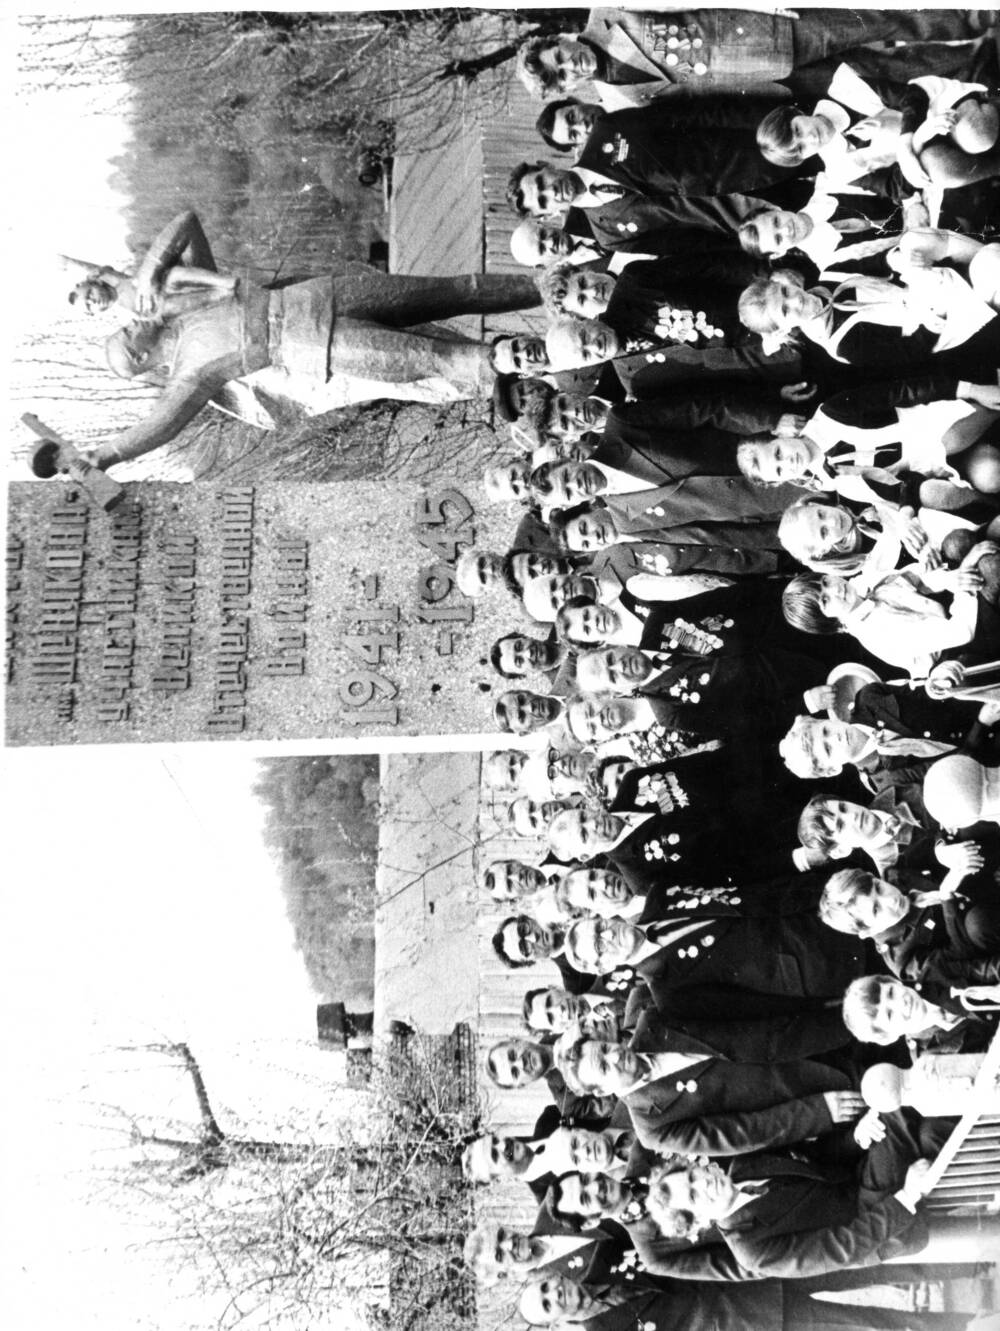 Фото ч/б. Открытие  монумента в память погибшим в годы Великой Отечественной войны. Монумент установлен на ш. Шевякова